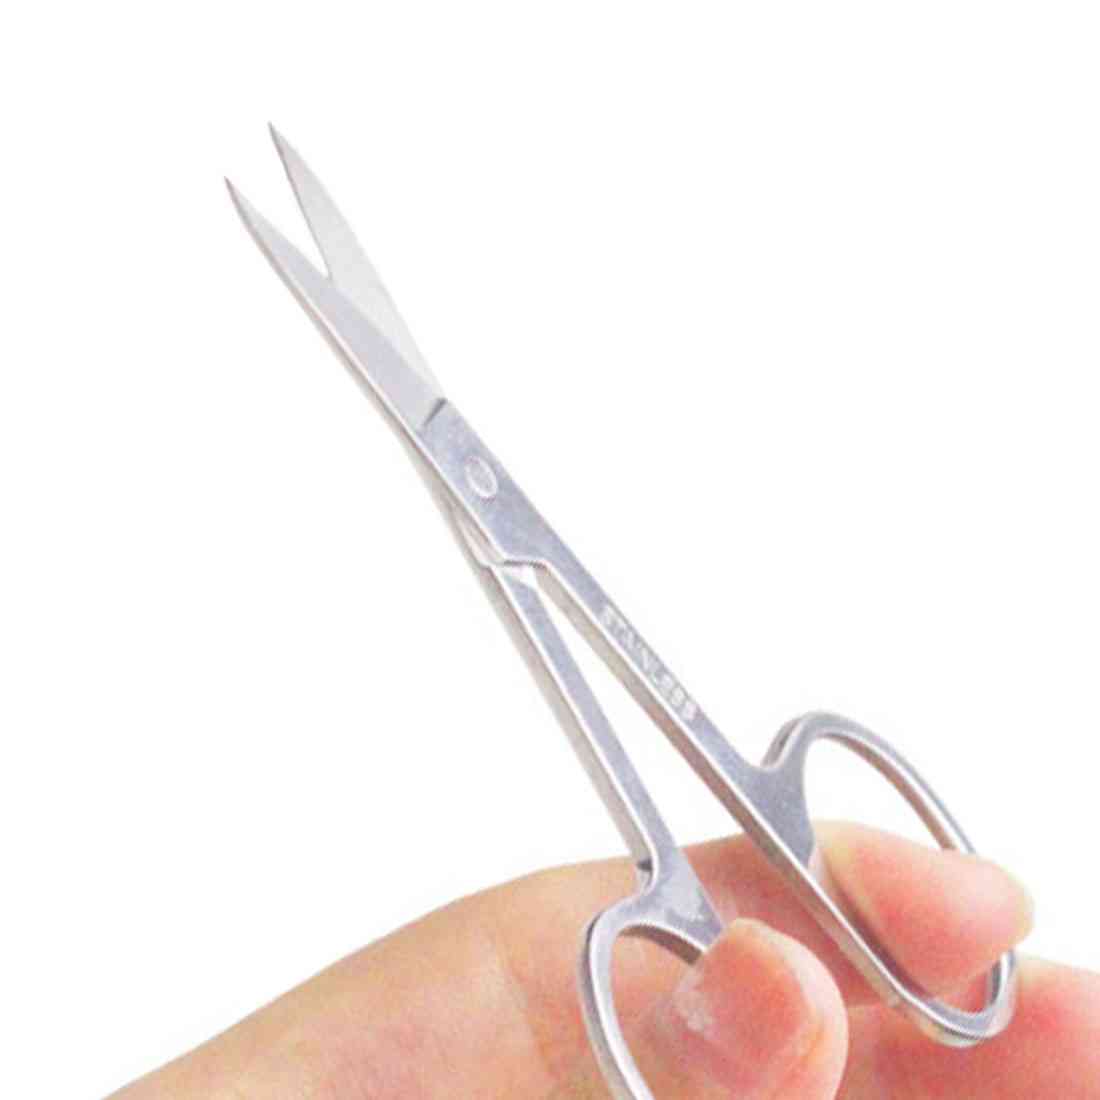 Curved Pedicure Manicure Nail Scissor